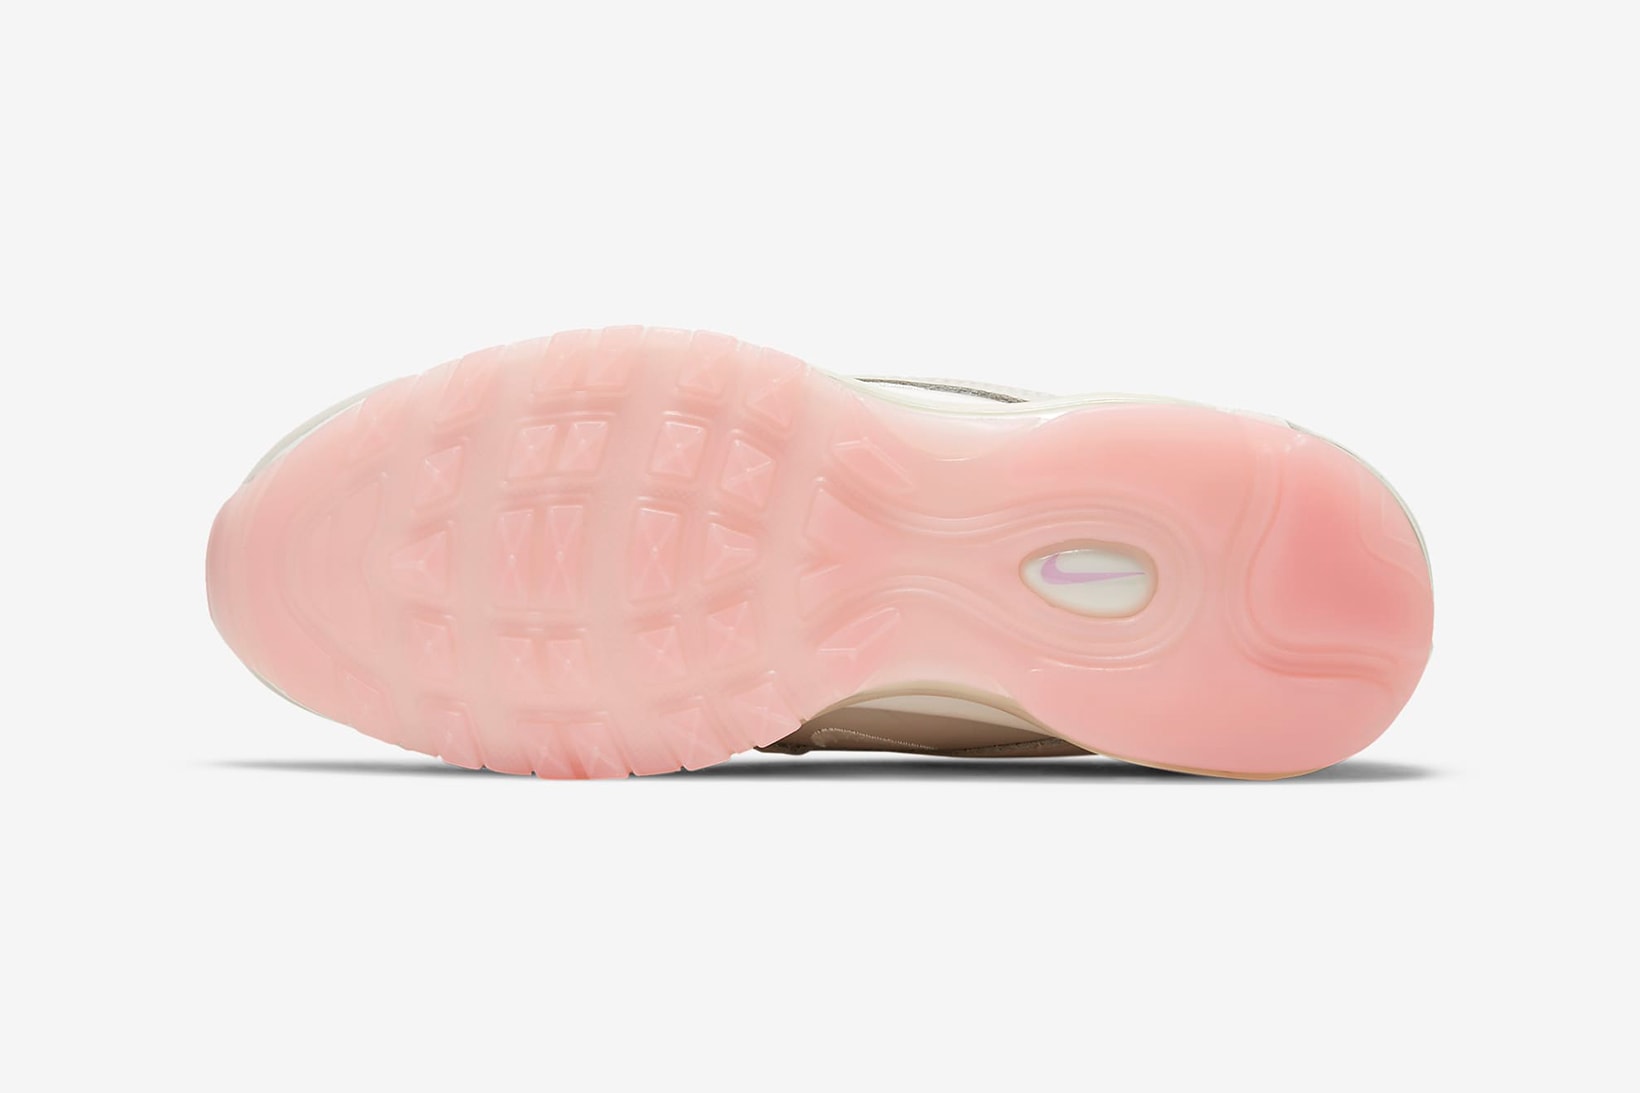 nike air max 97 womens sneakers beige white pink colorway shoes footwear sneakerhead